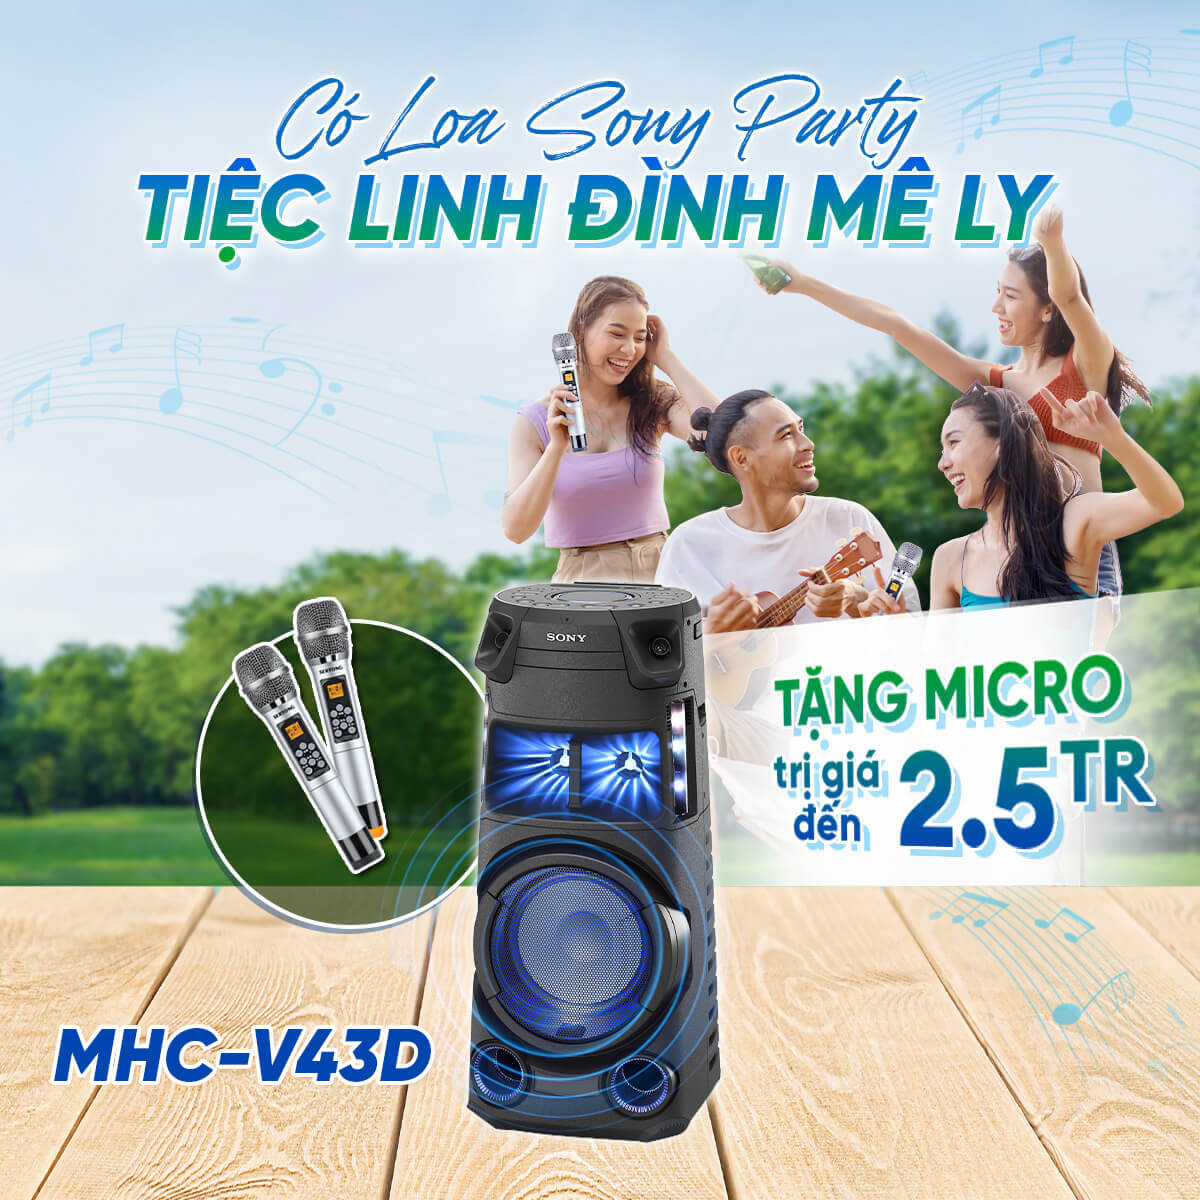 MHC-V43D | Hệ thống âm thanh công suất cao tích hợp BLUETOOTH® | Tặng Micro trị giá 2.5Tr